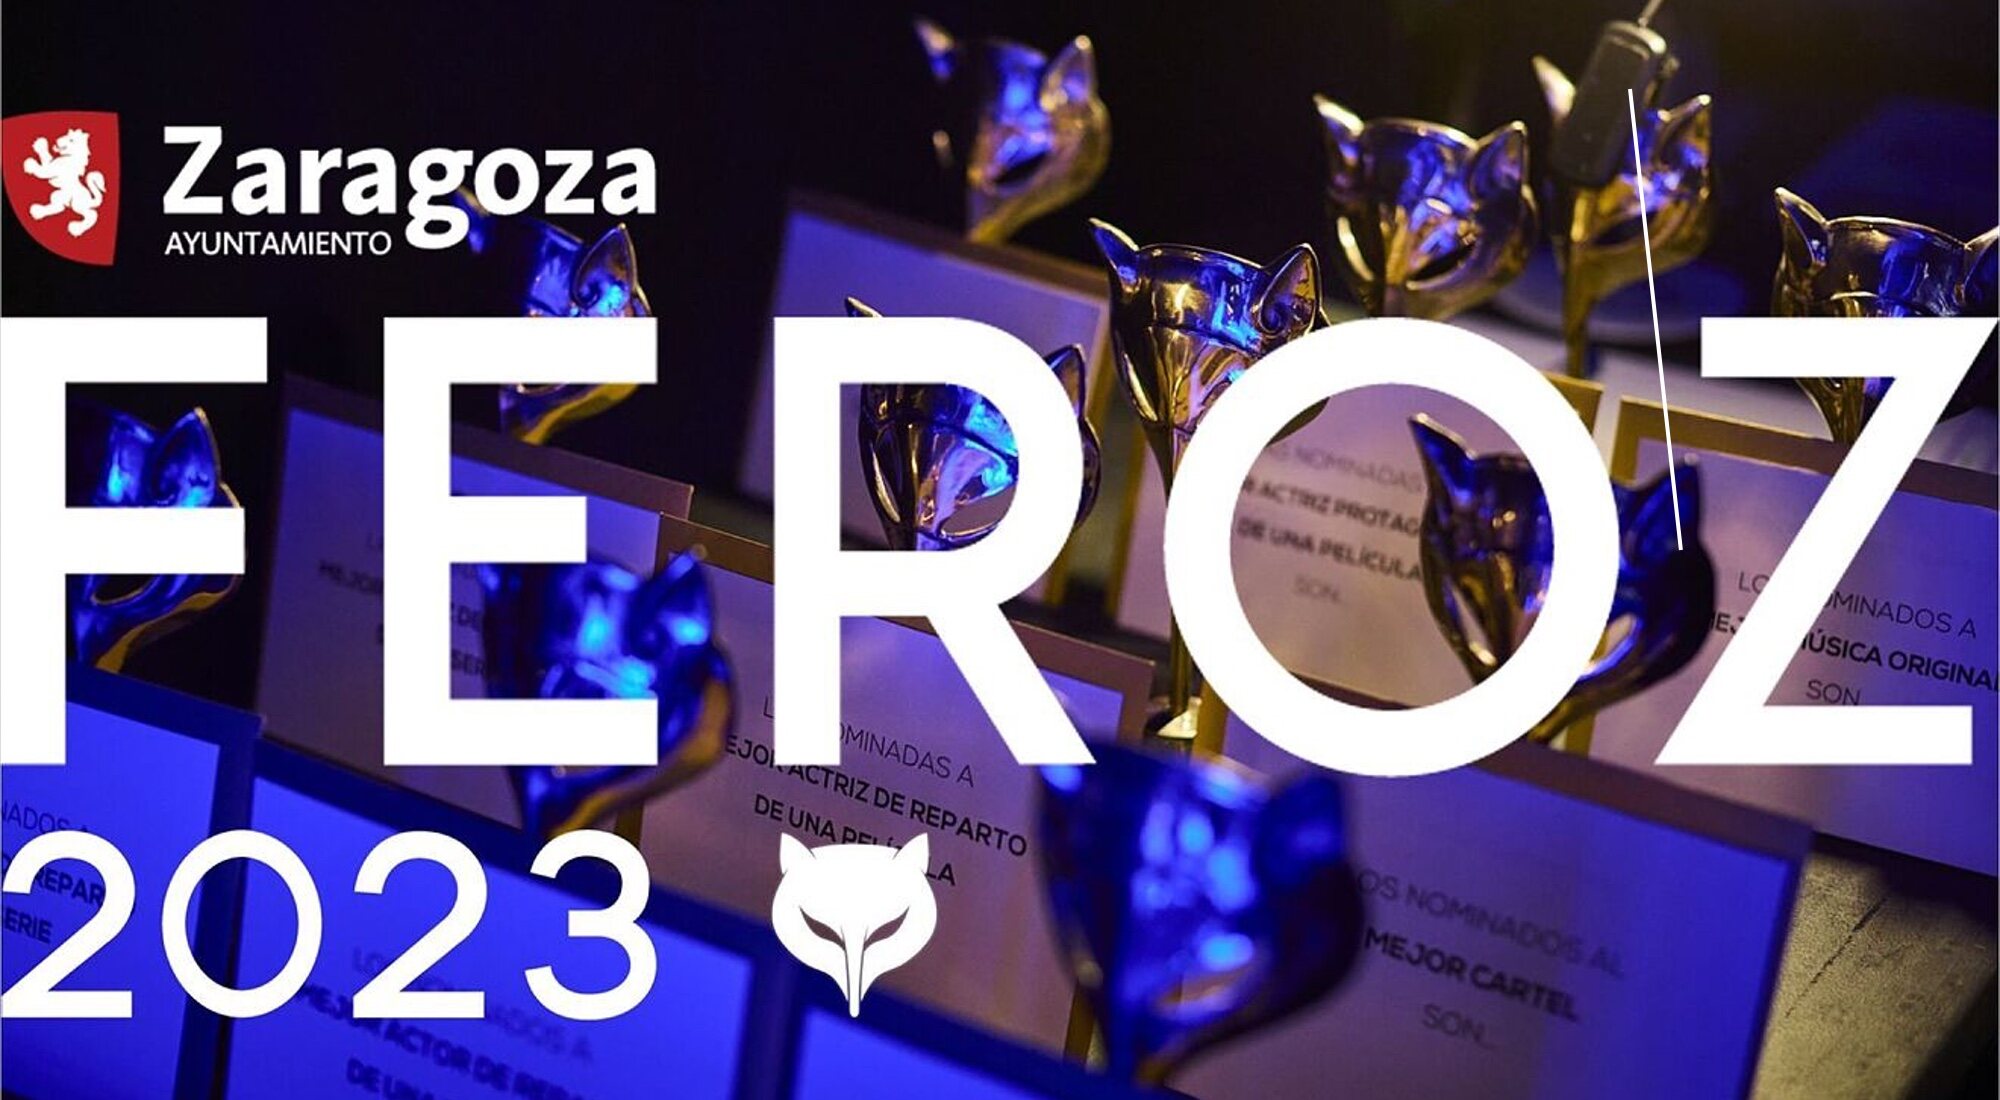 Premios Feroz